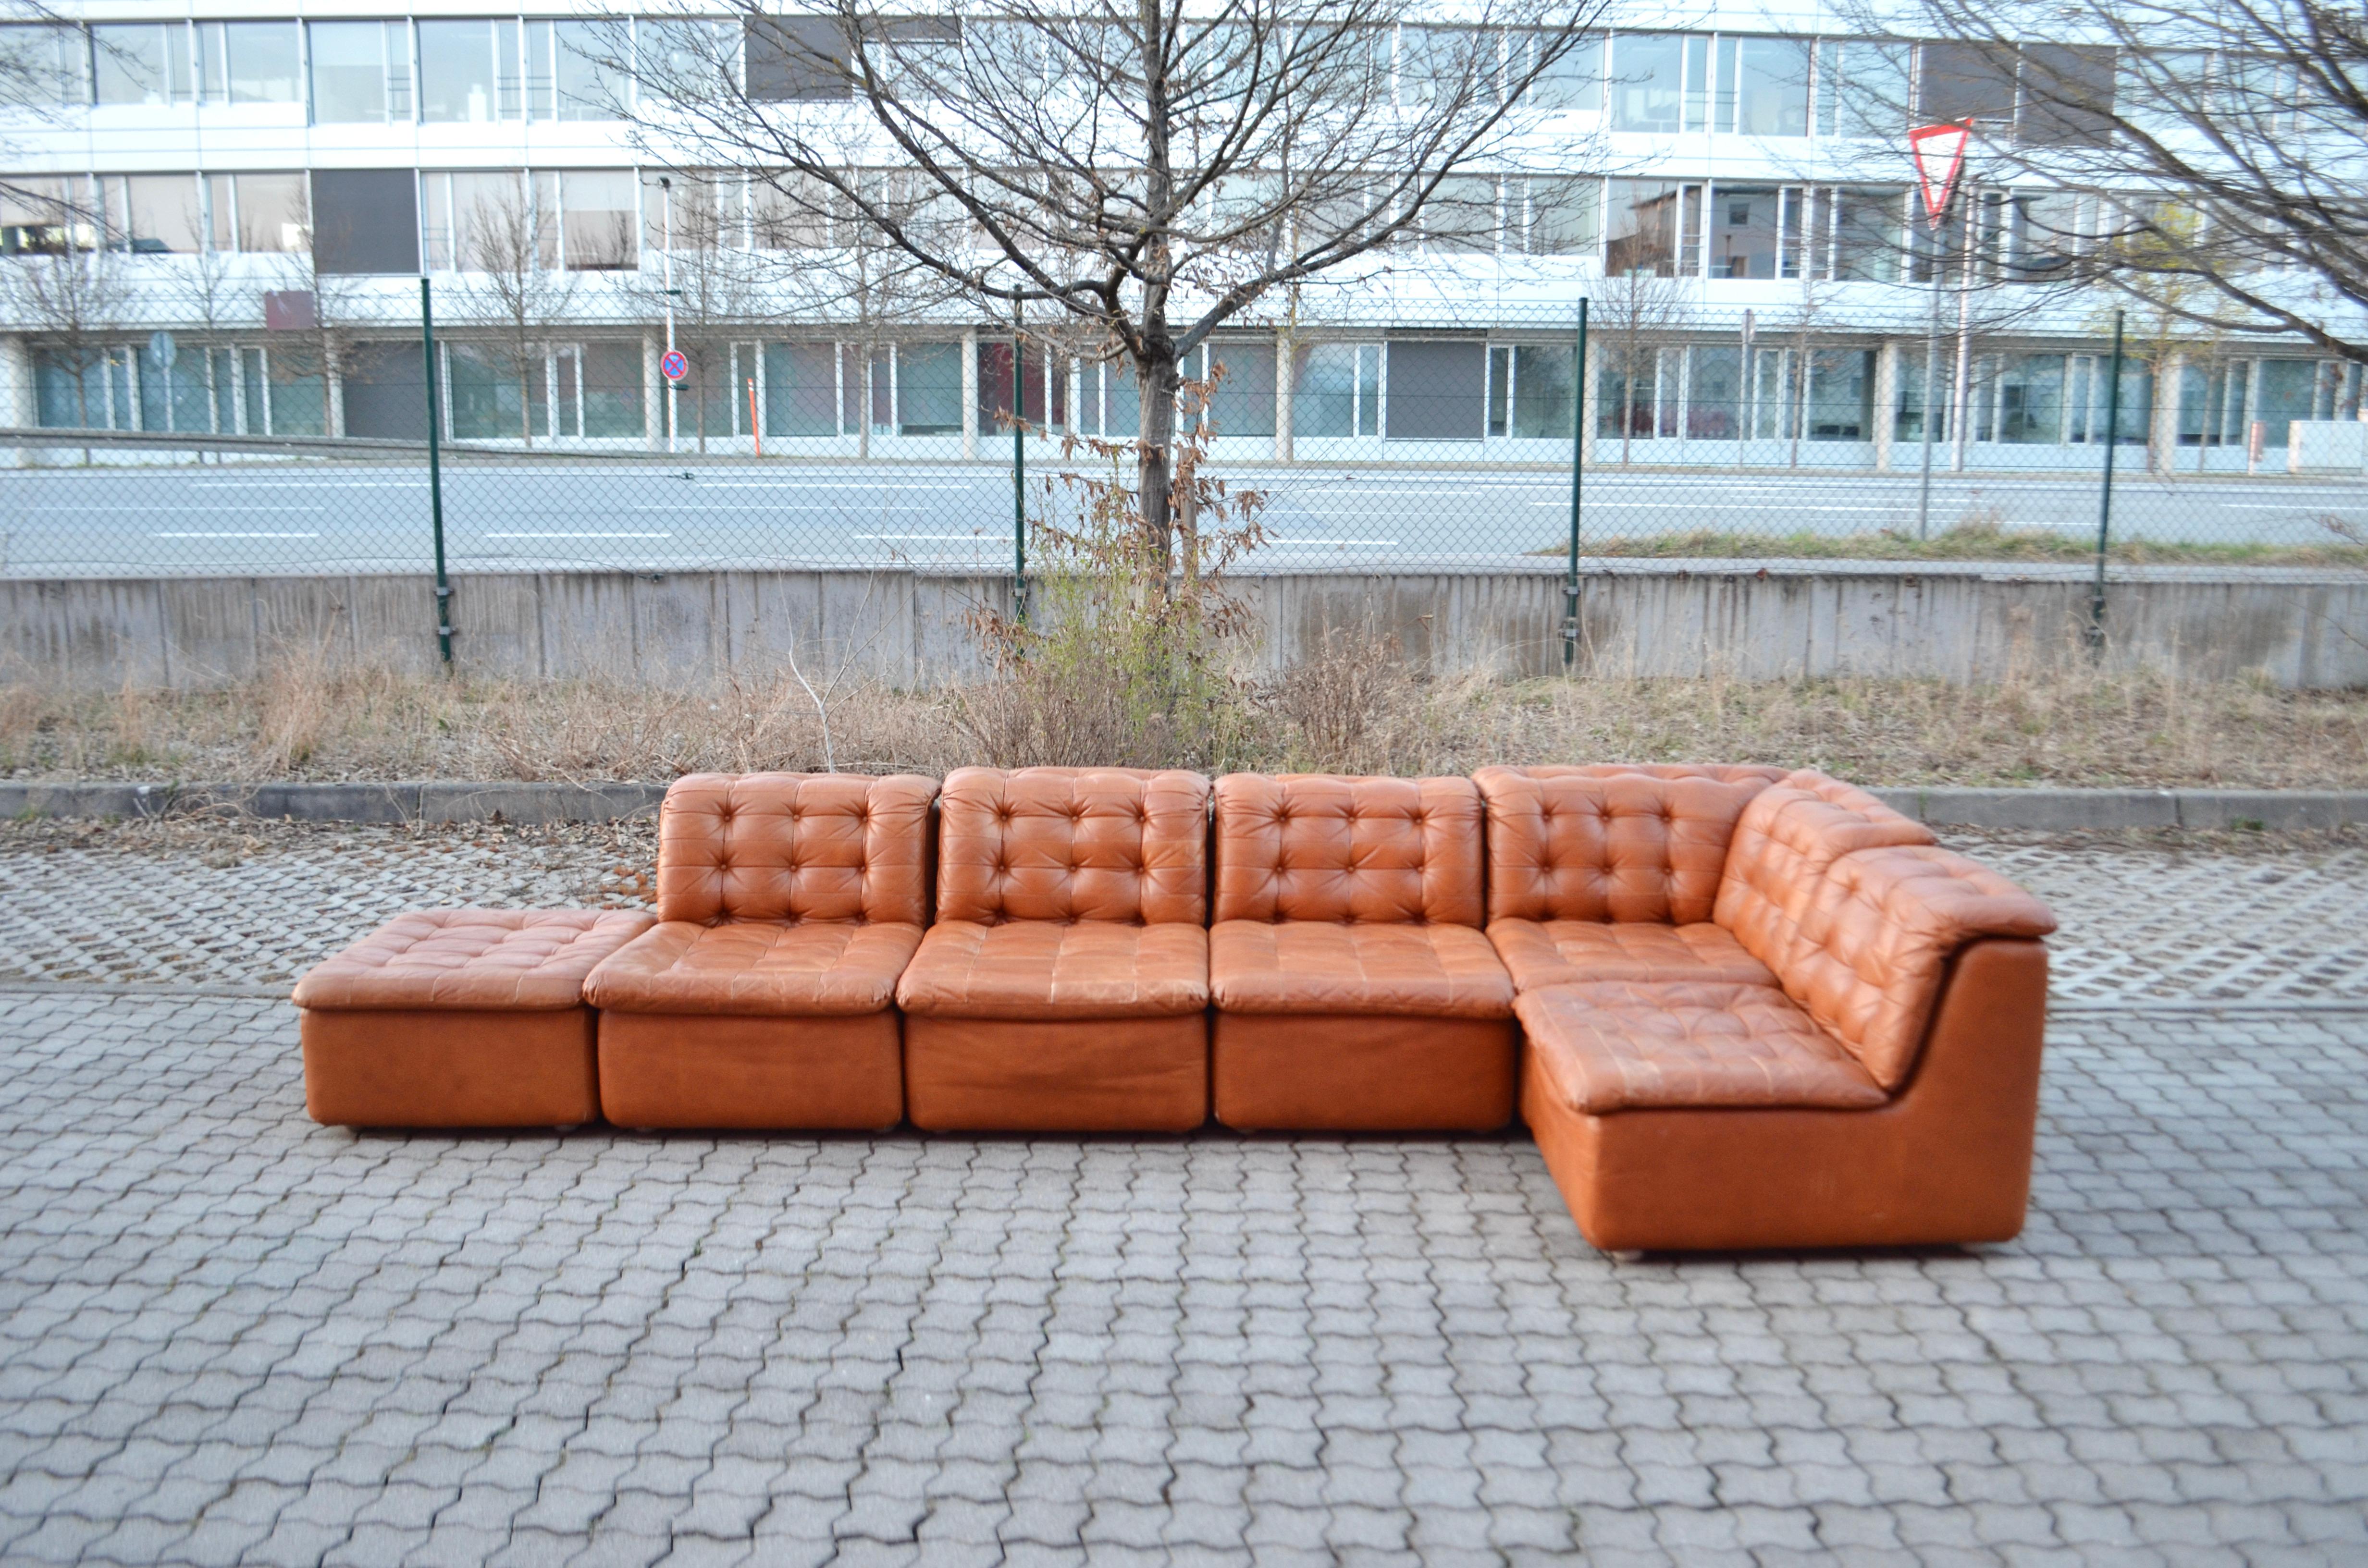 Ce superbe canapé sectionnel modulaire en cuir est fabriqué en Allemagne.
Il s'agit d'un groupe de sièges de haute qualité.
Le producteur n'est pas encore connu.
Il s'agit d'un design pur des années 70 avec une forme moderne et intemporelle.
Le